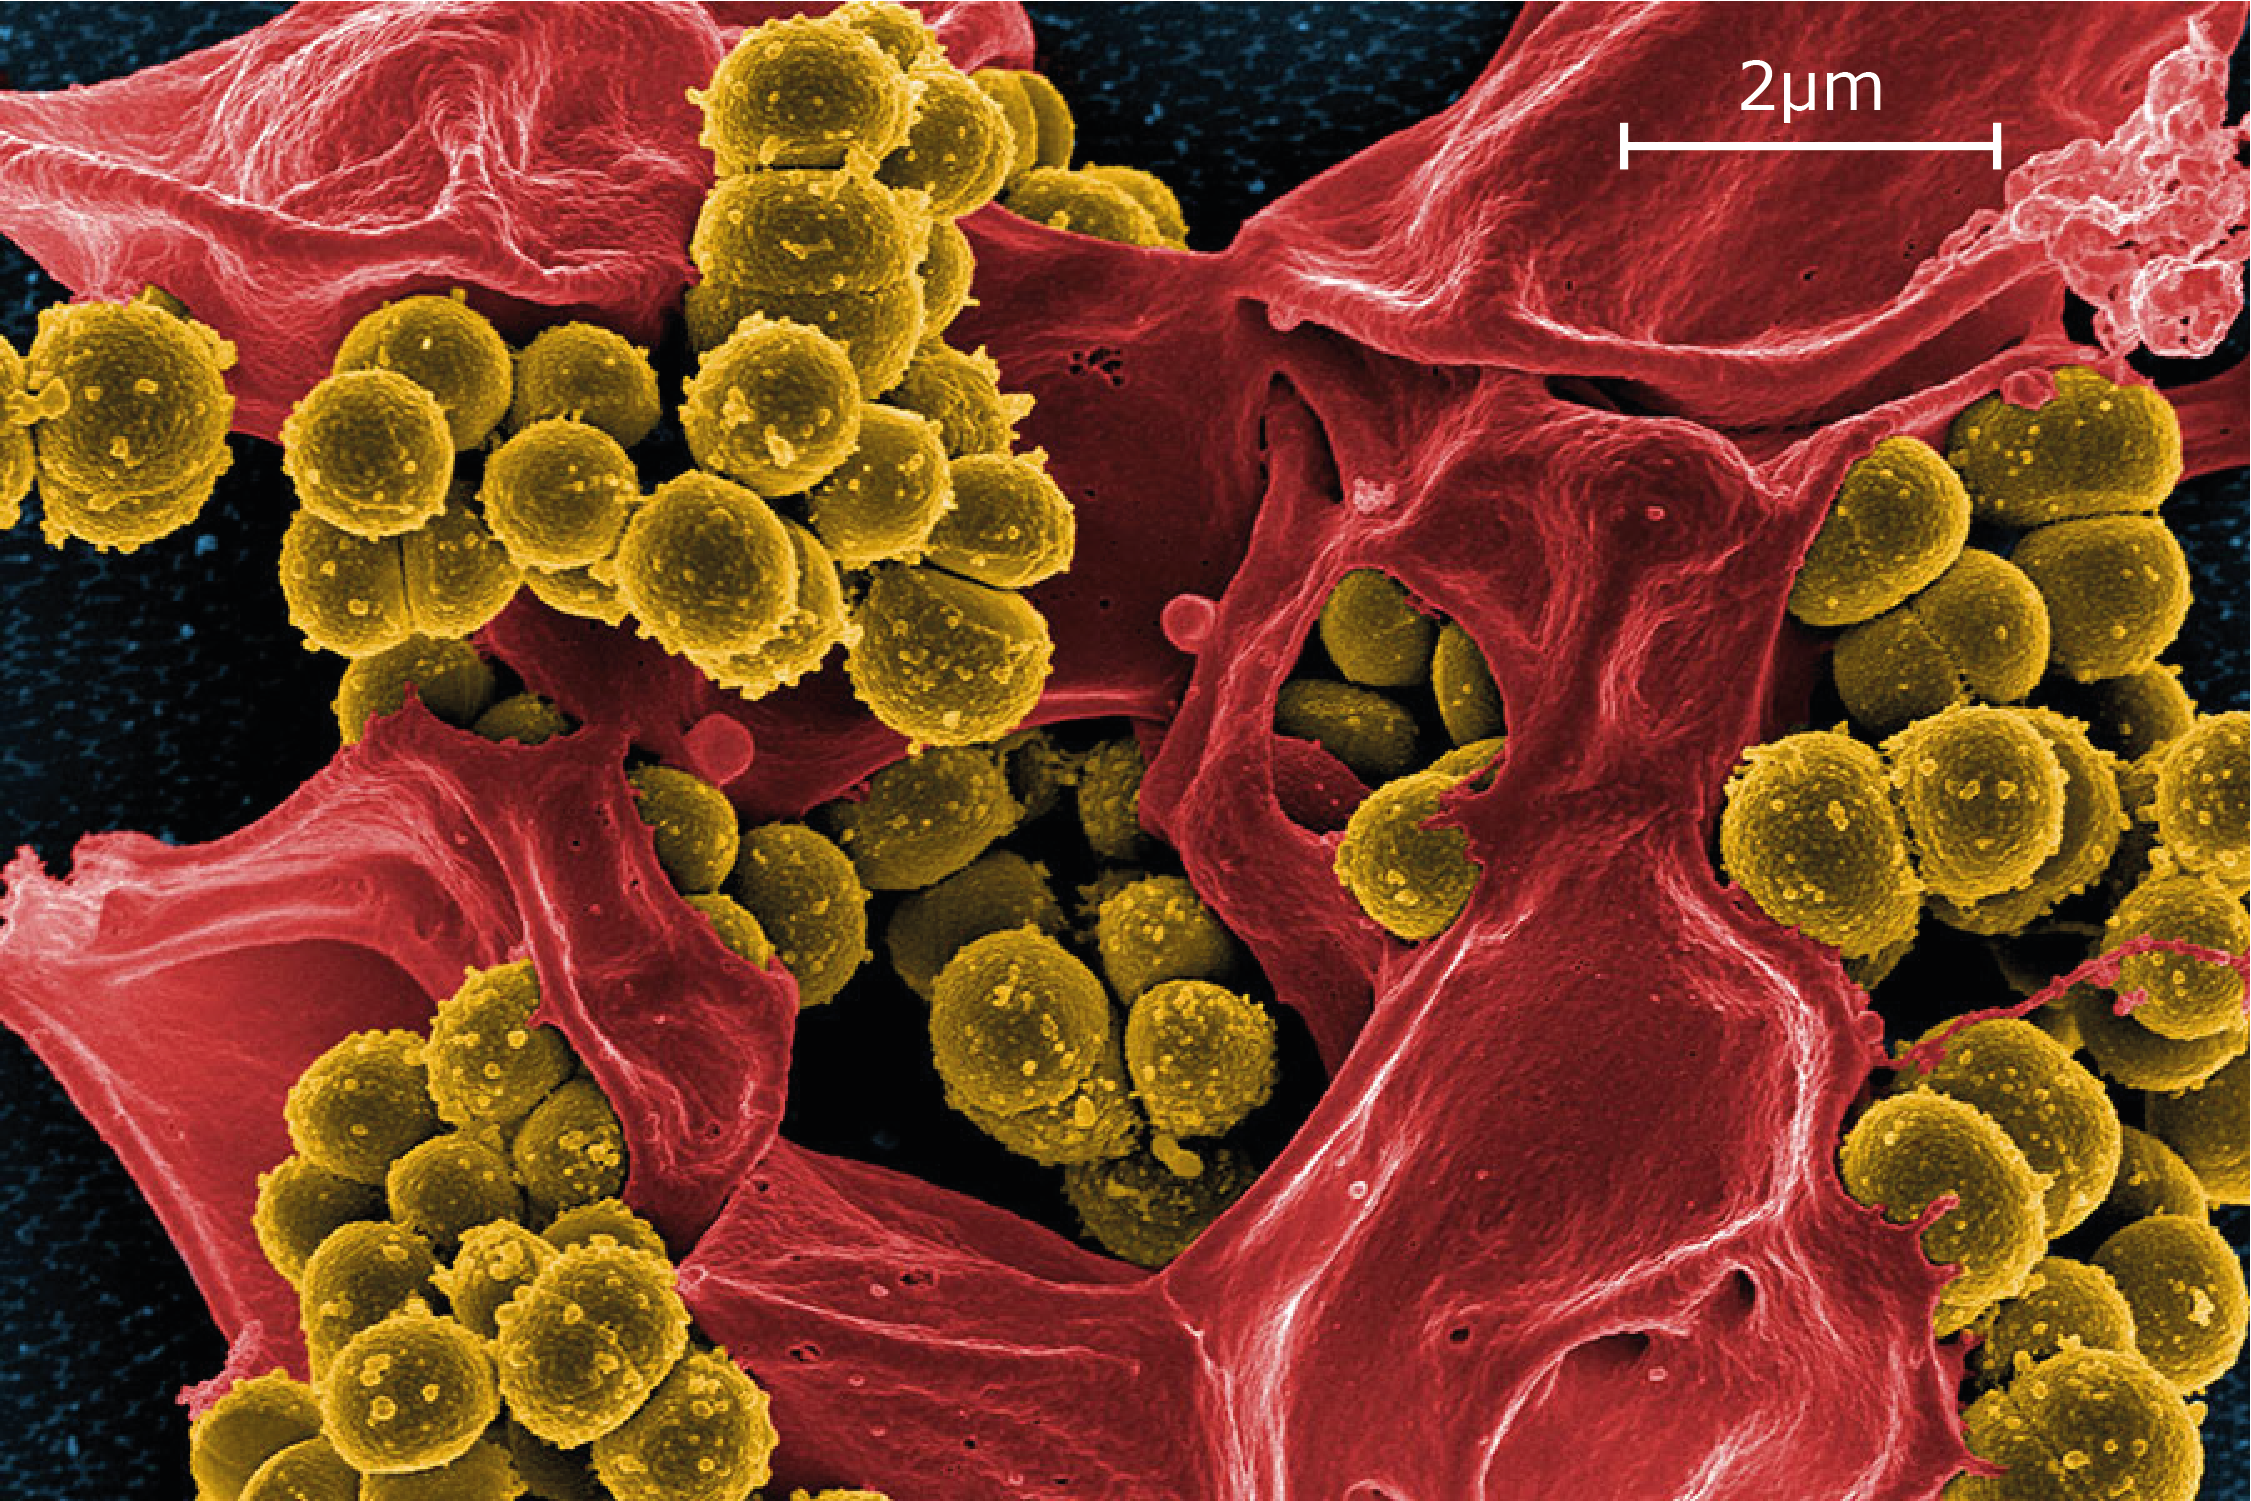 Staphilococcus Aureus Scale